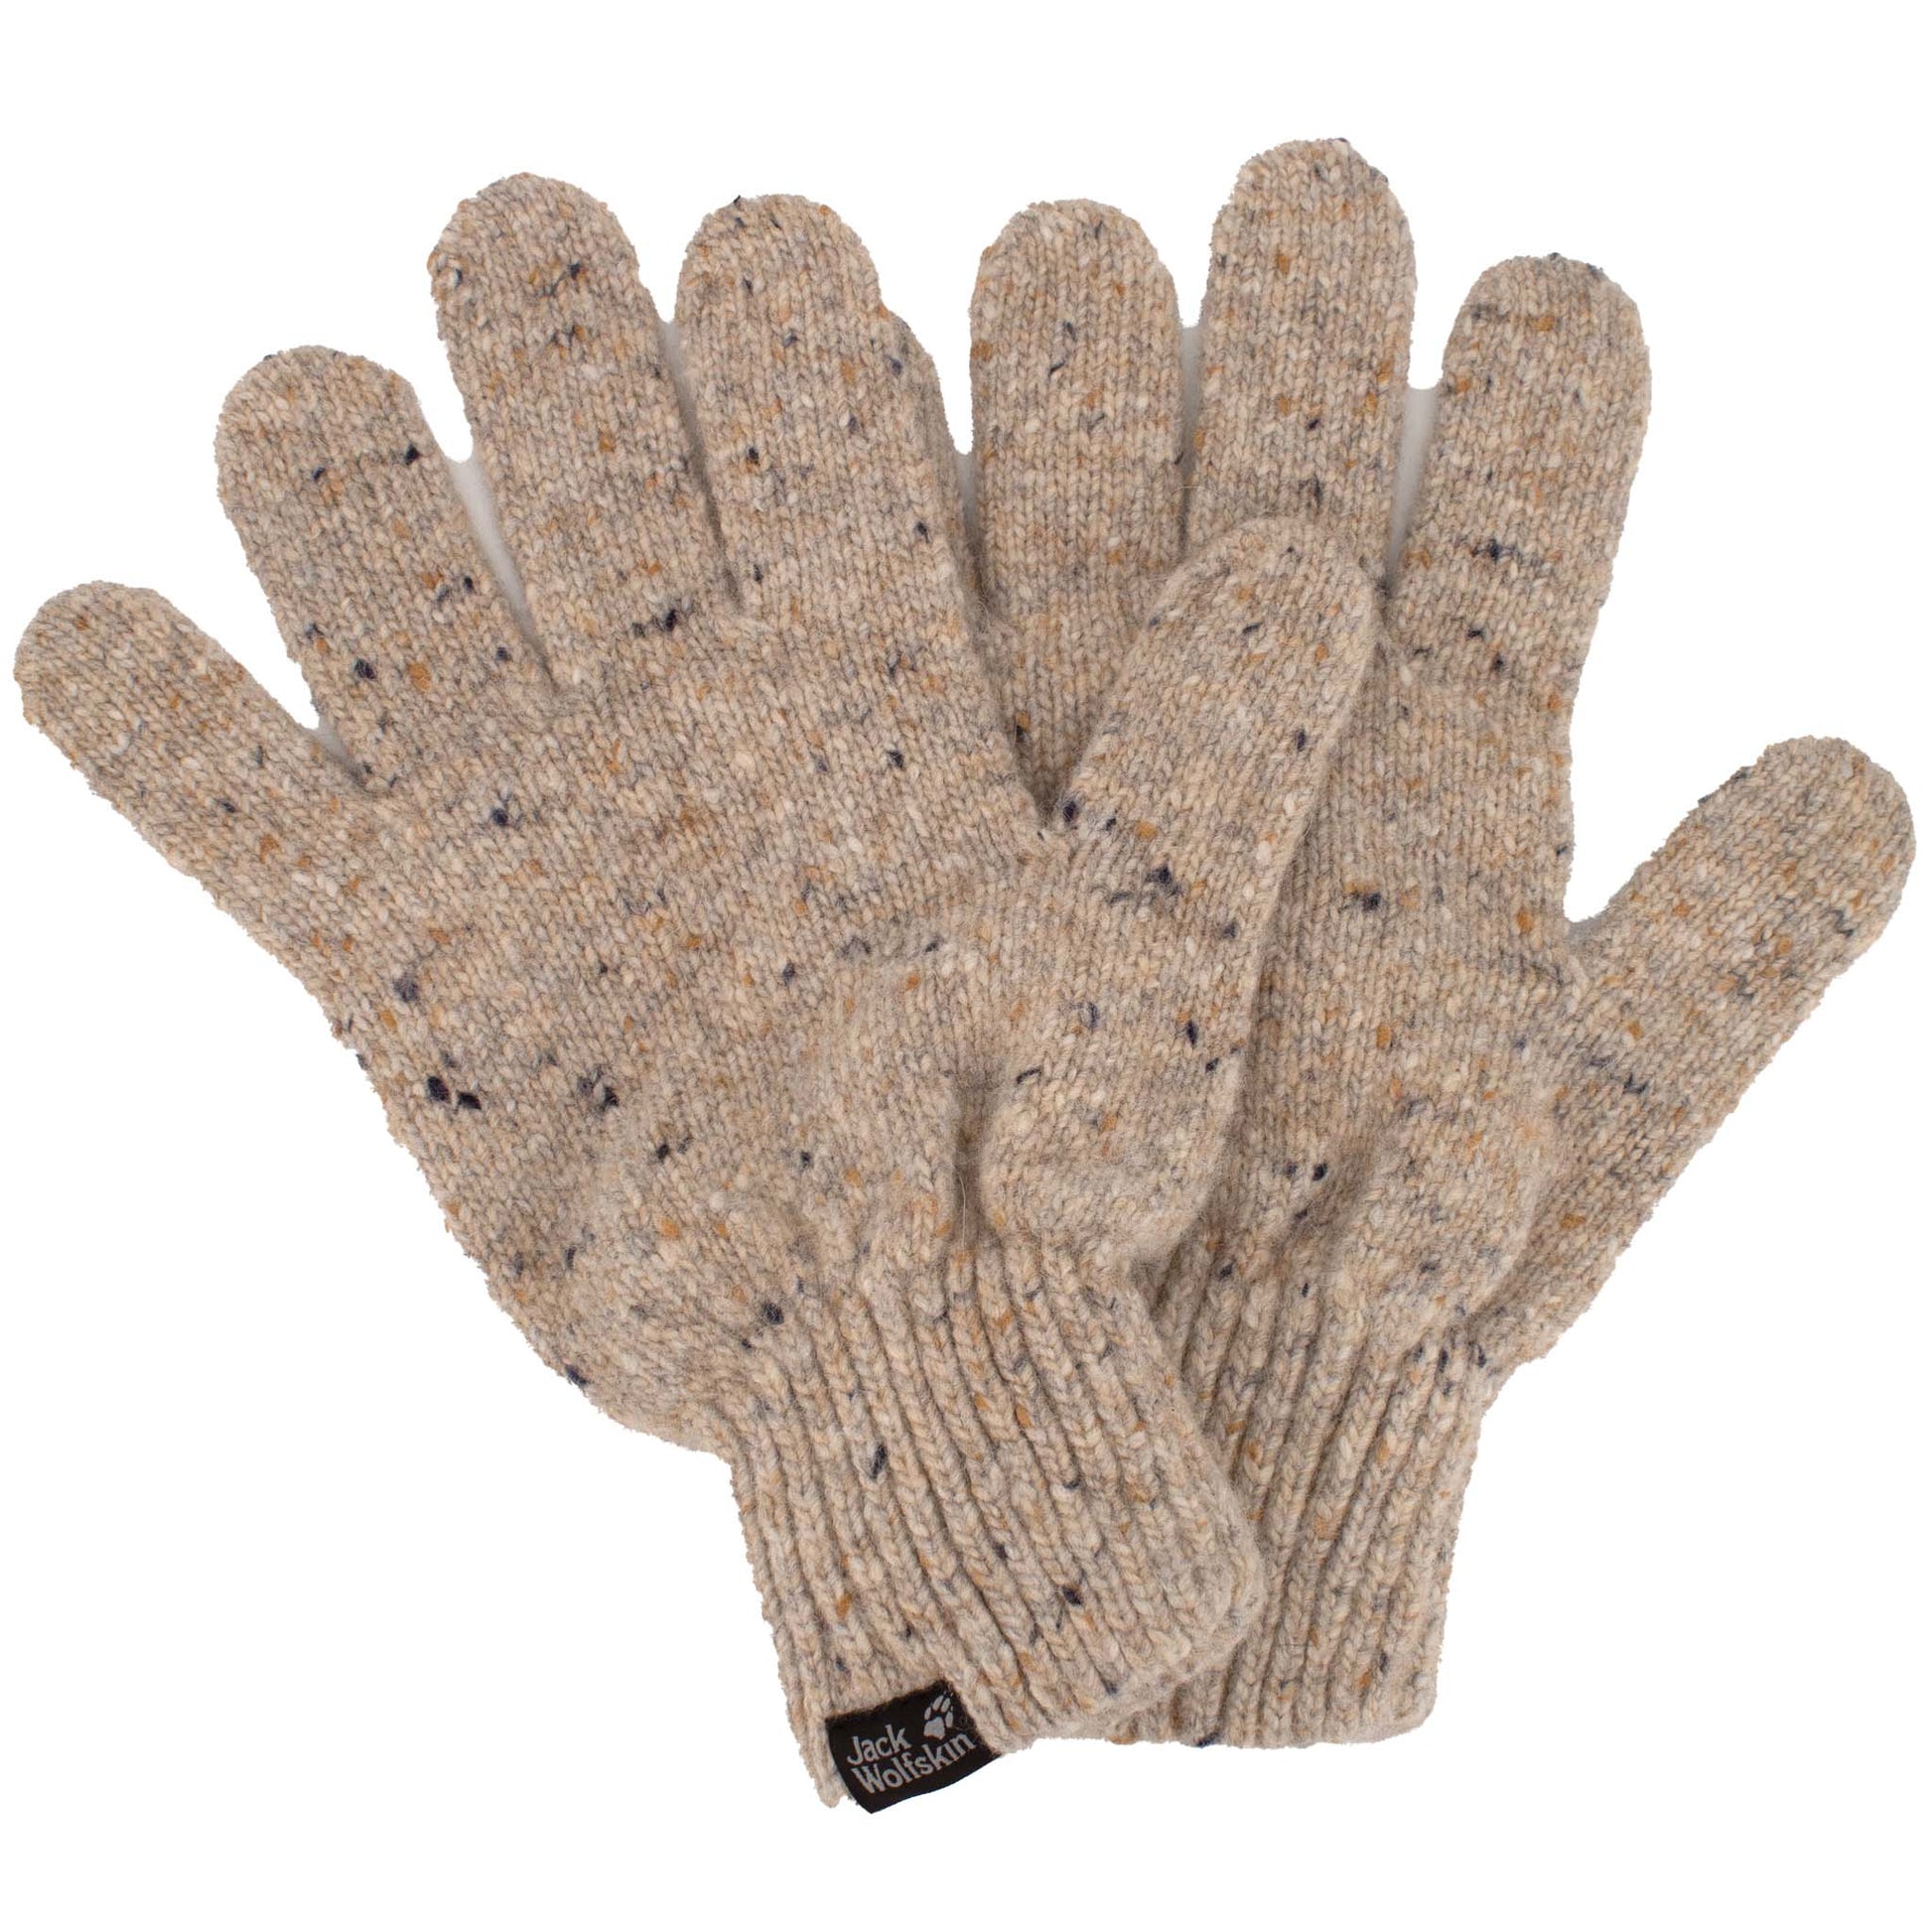 Jack Wolfskin Merino Glove Handschuhe Strickhandschuhe Wolle Beige 1907441-5605